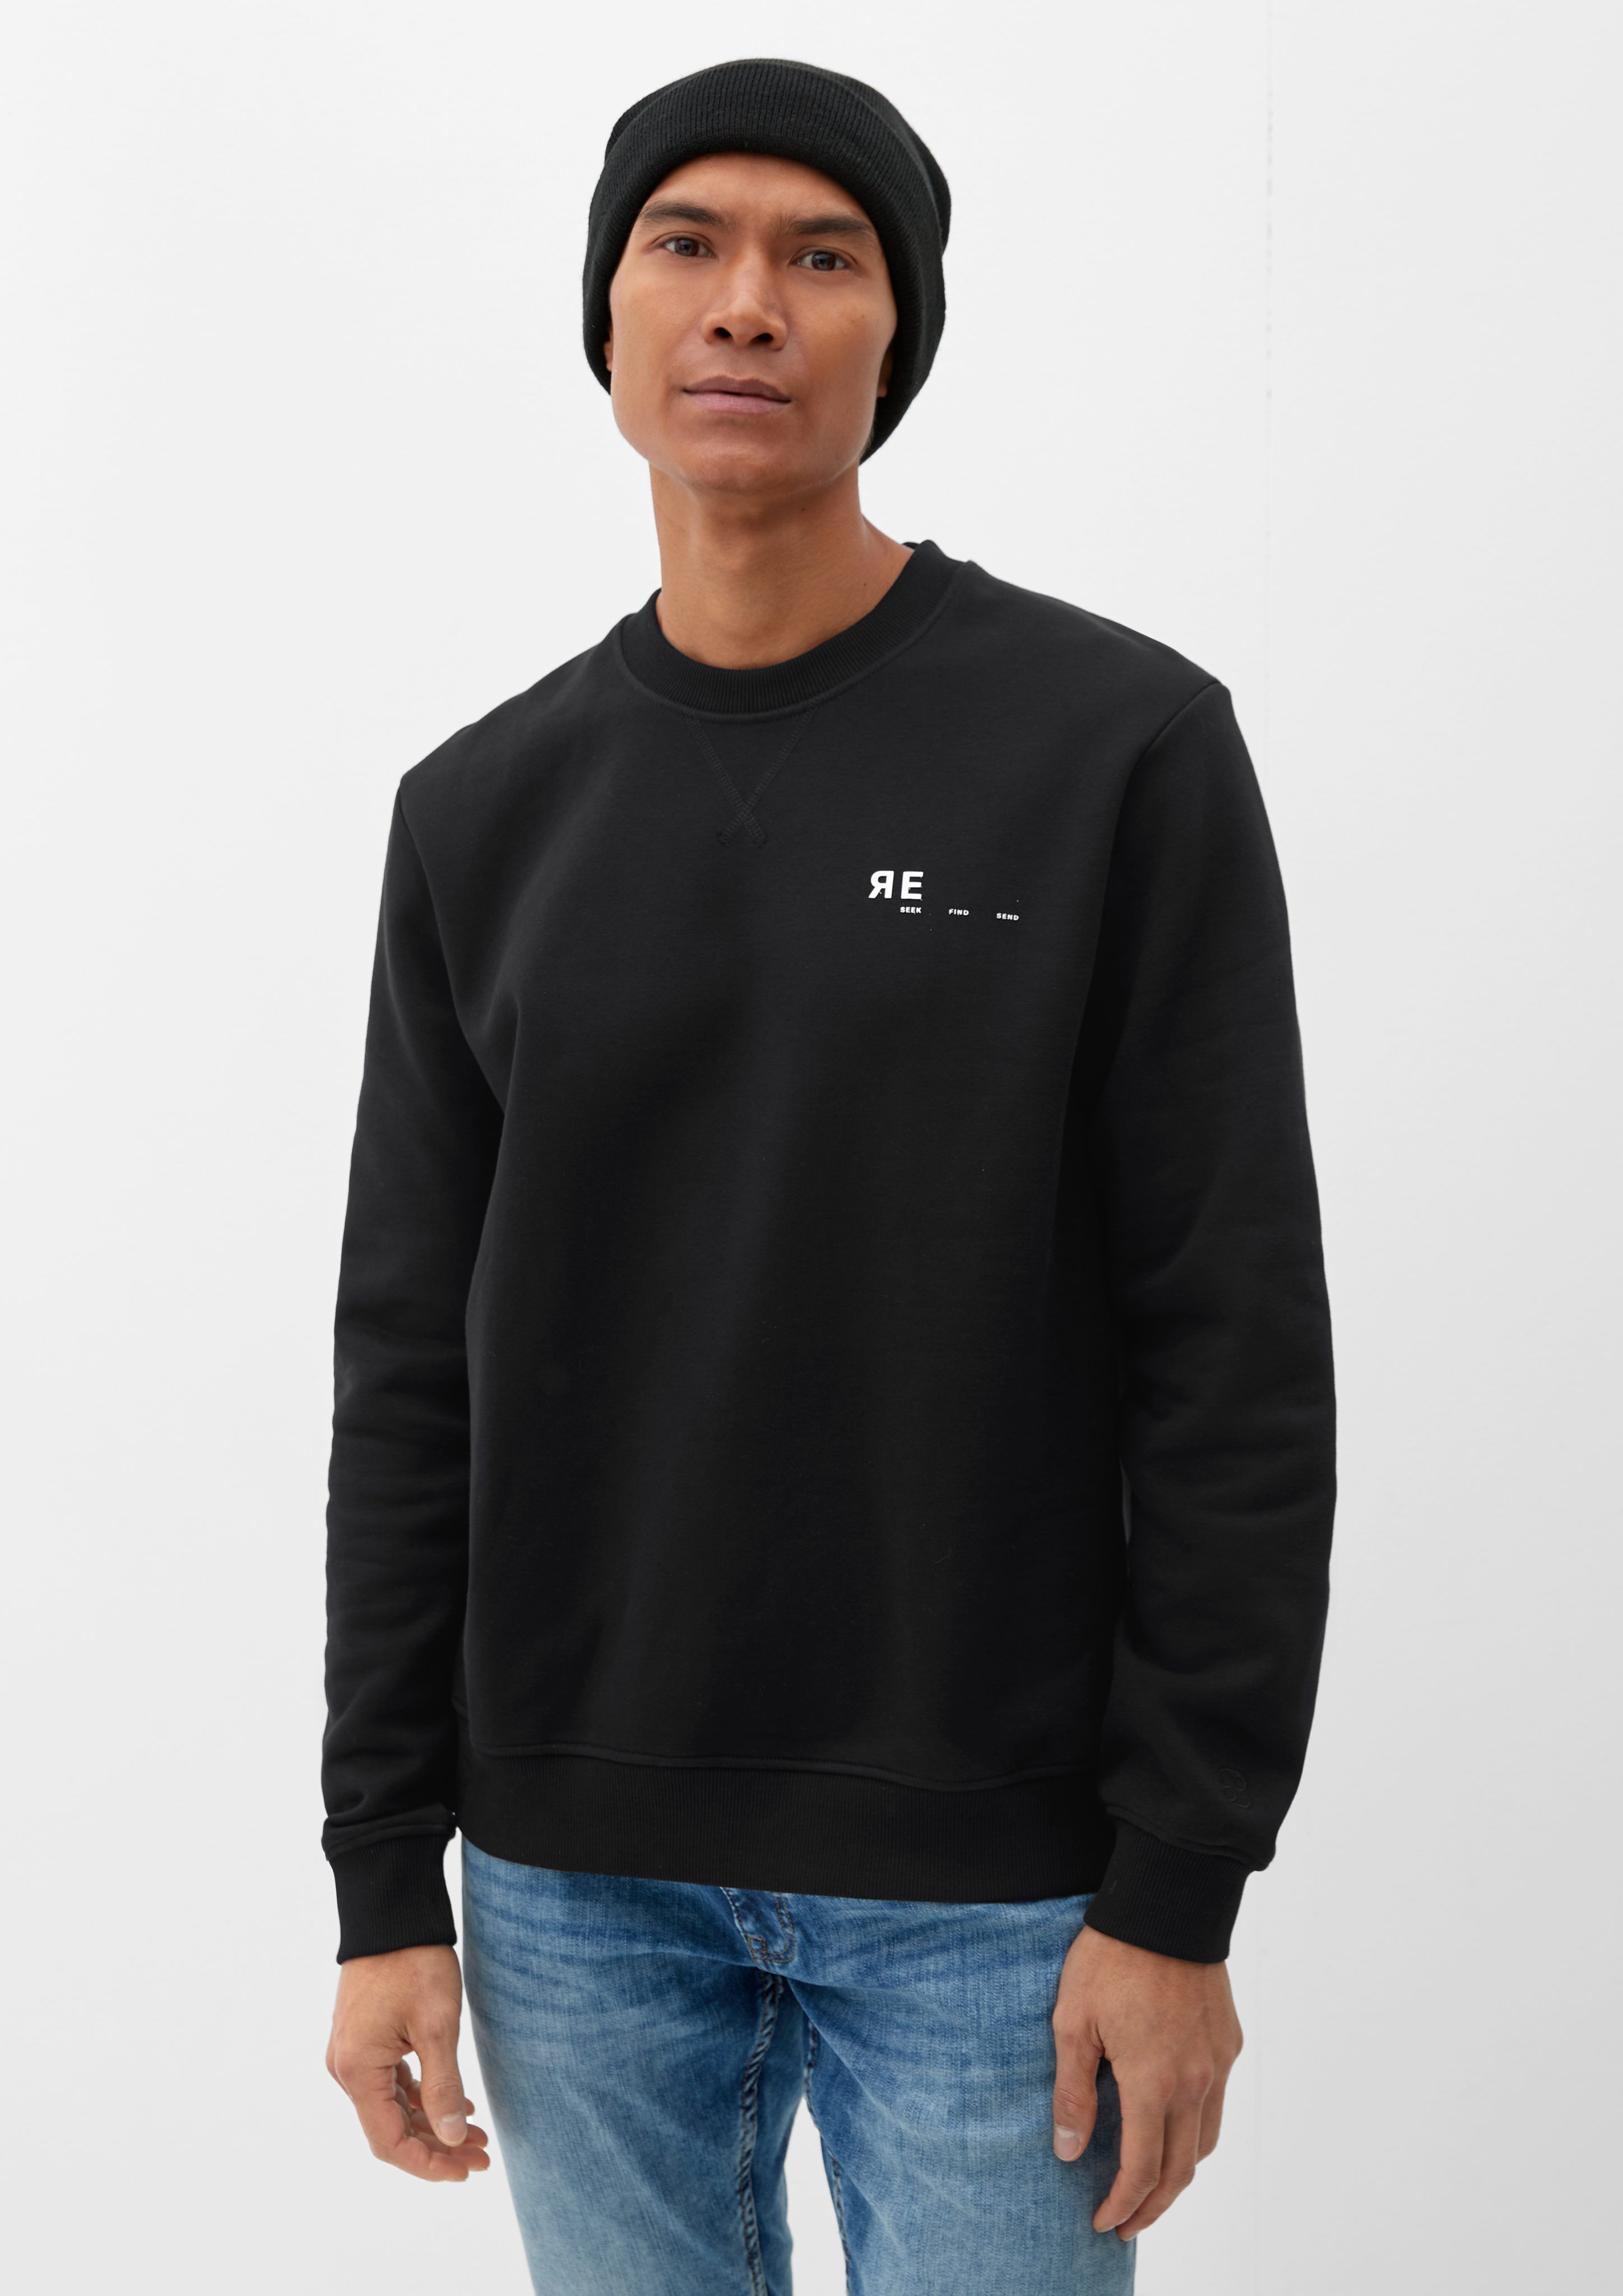 s.Oliver Sweatshirt Sweatshirt mit Schrift- und Backprint Artwork, Rippblende, Rippbündchen schwarz